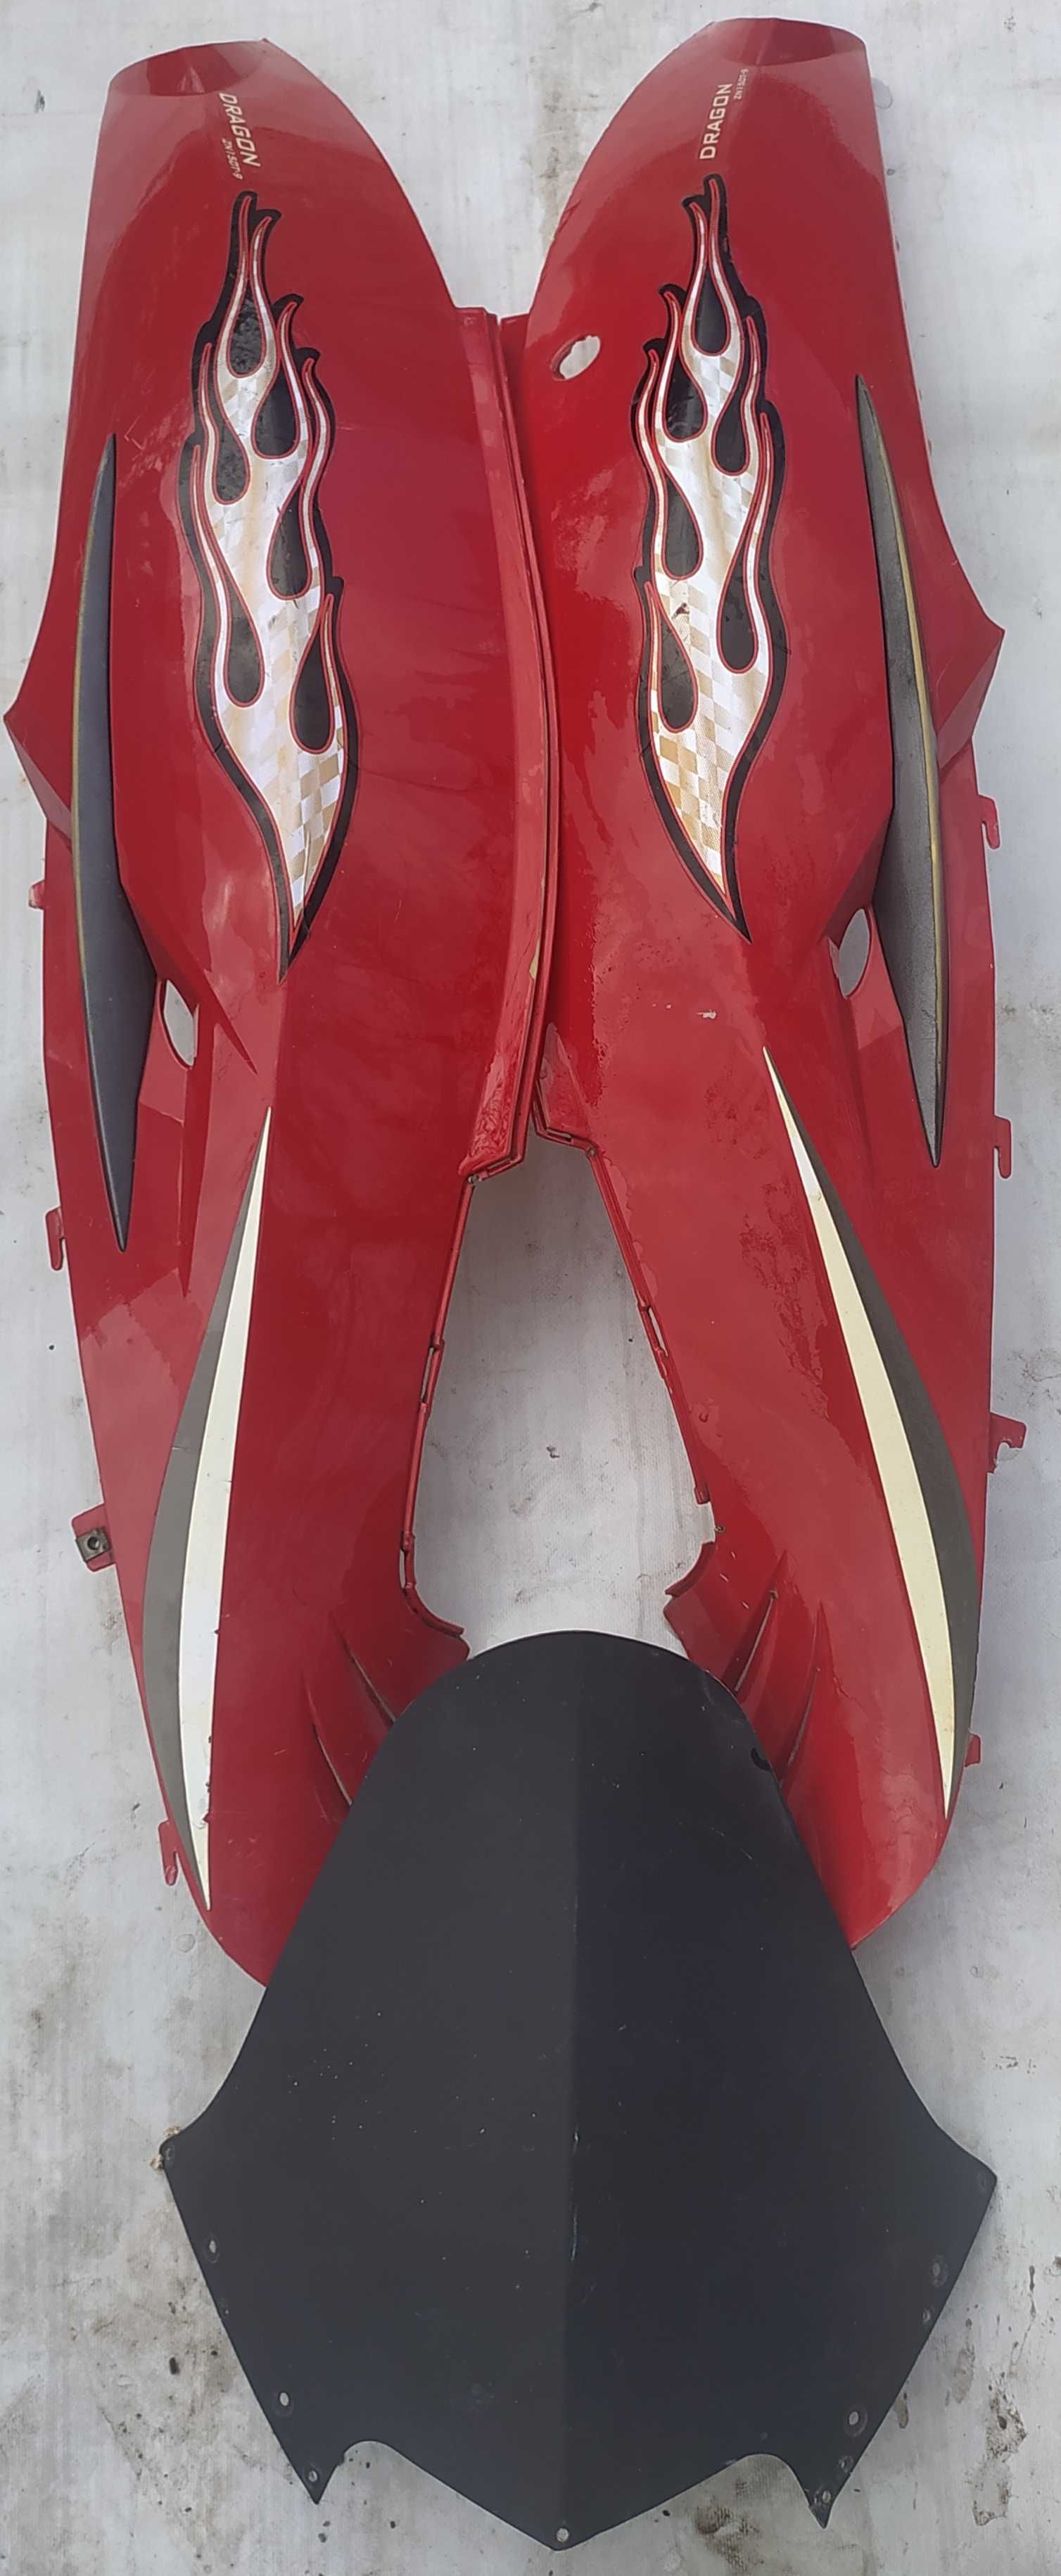 Пластик китайского скутера Dragon